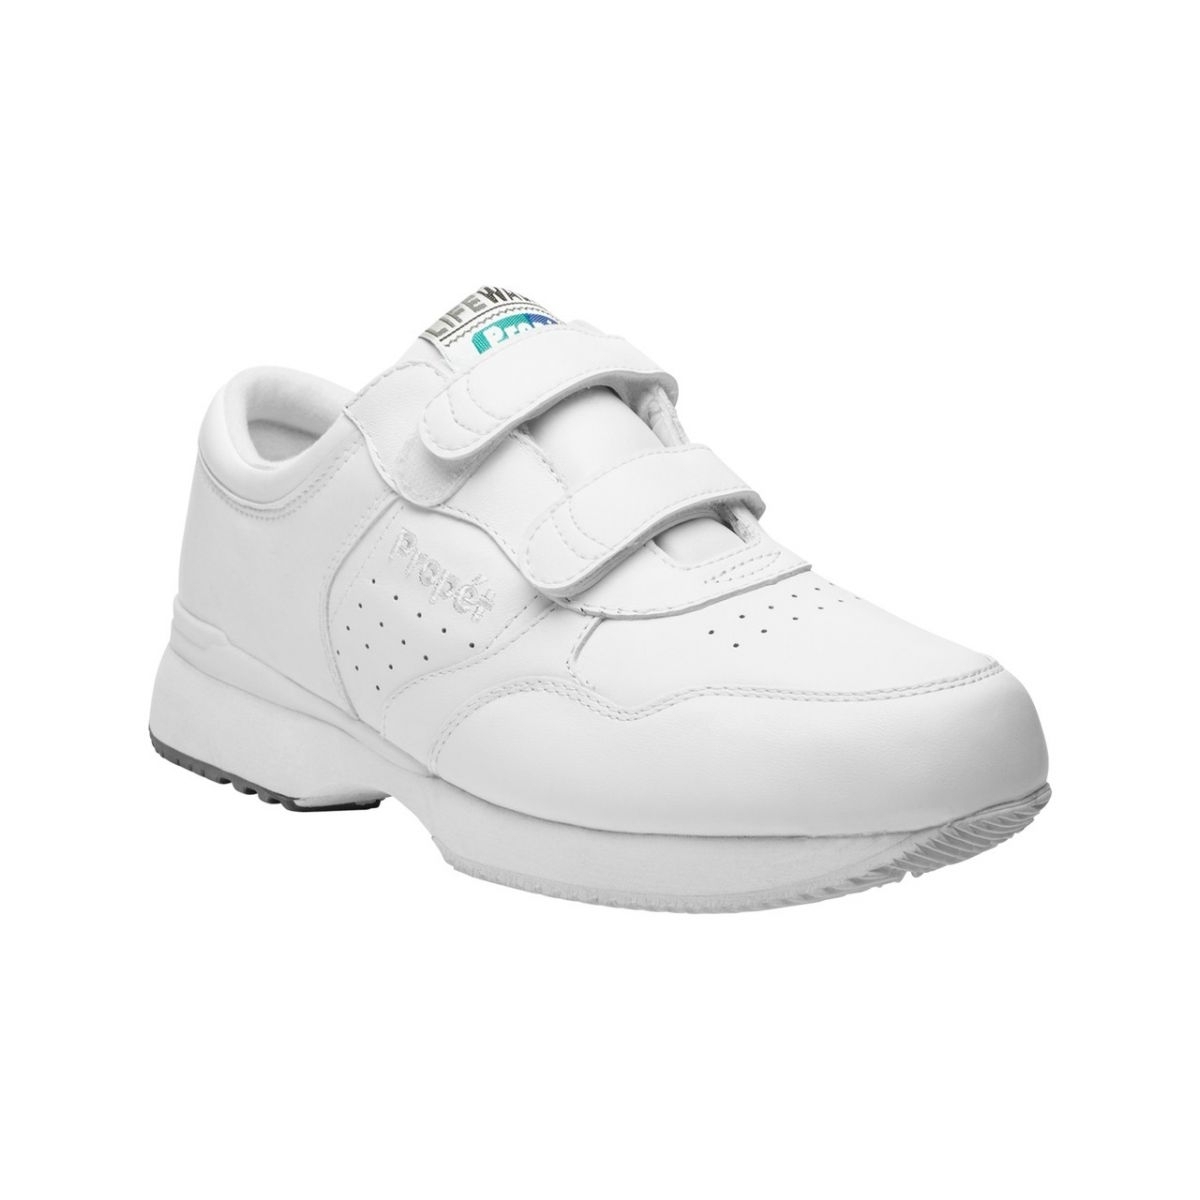 Propet Men's Life Walker Strap Shoe White - M3705WHT WHITE - WHITE, 17 X-Wide